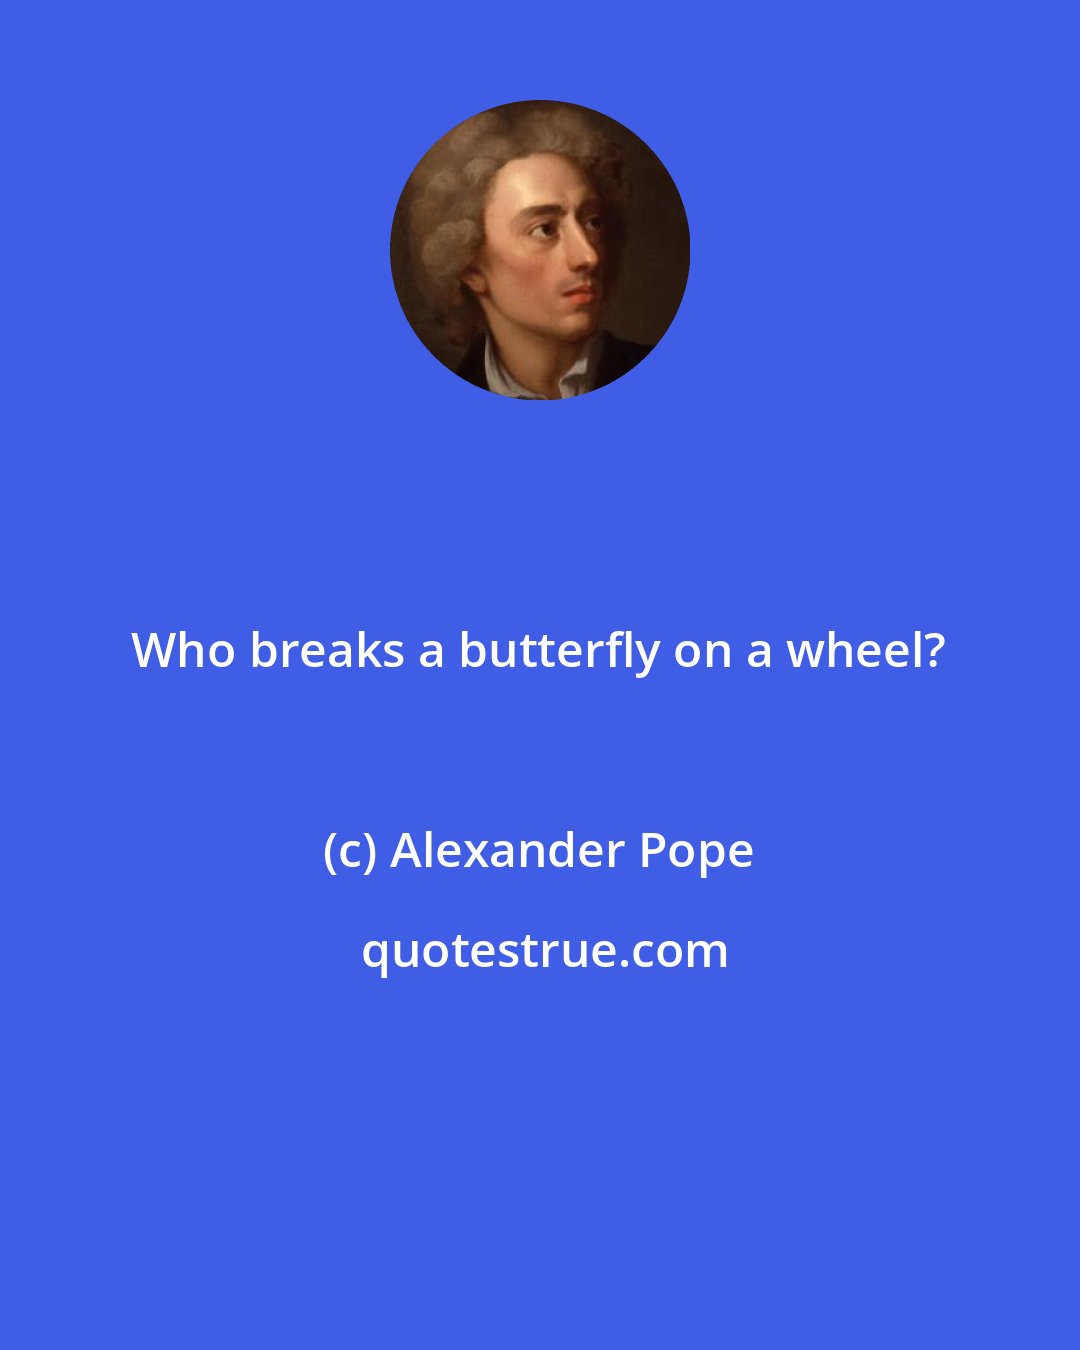 Alexander Pope: Who breaks a butterfly on a wheel?